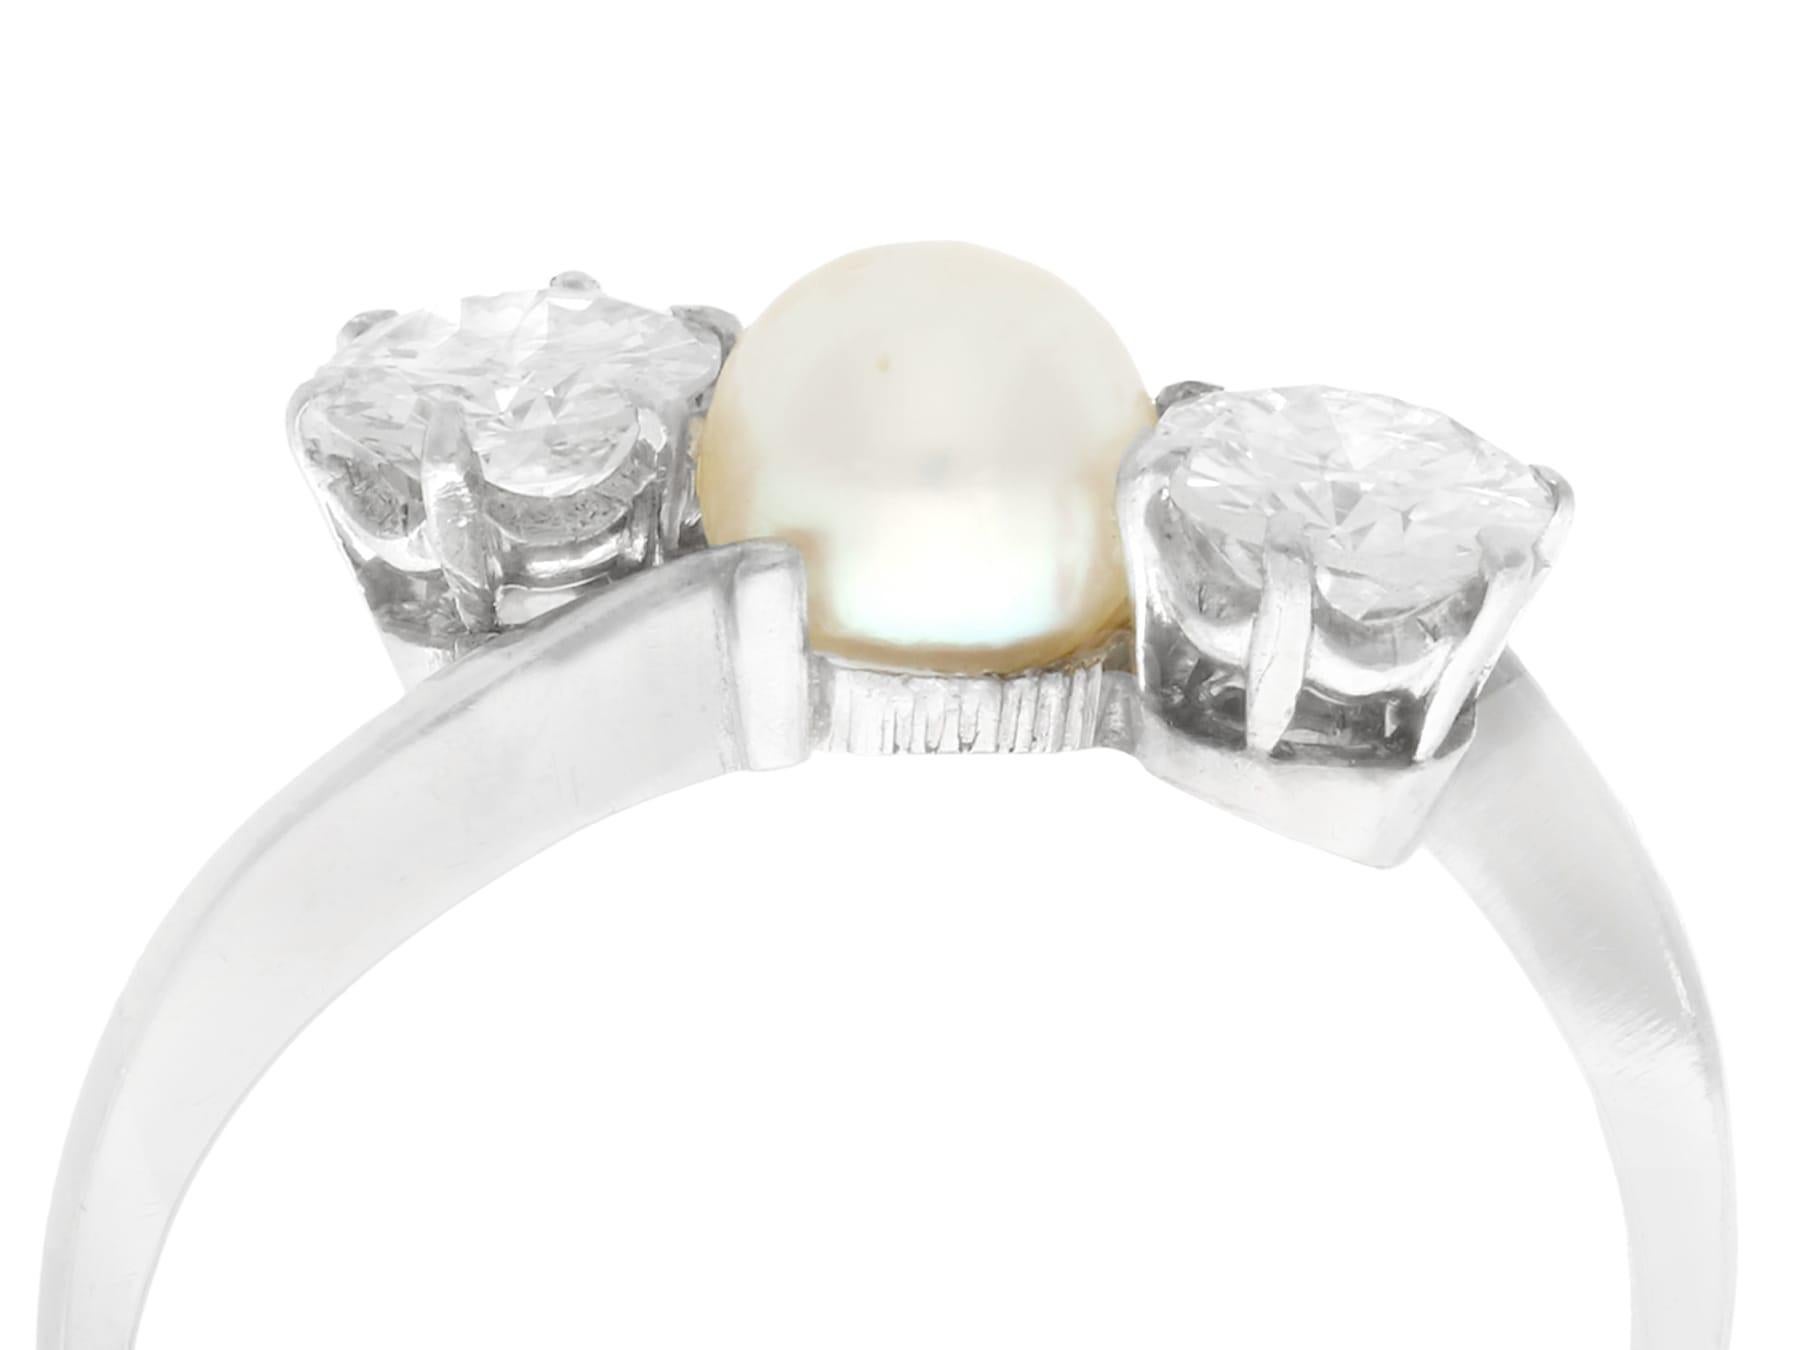 Eine feine und beeindruckende Vintage 0,83 Karat Diamant und Zuchtperle, Platin drei Stein Kleid Ring; Teil unserer Vintage-Schmuck / Estate Jewelry Sammlungen.

Dieser schöne und beeindruckende Vintage-Ring mit Perlen und Diamanten ist aus Platin